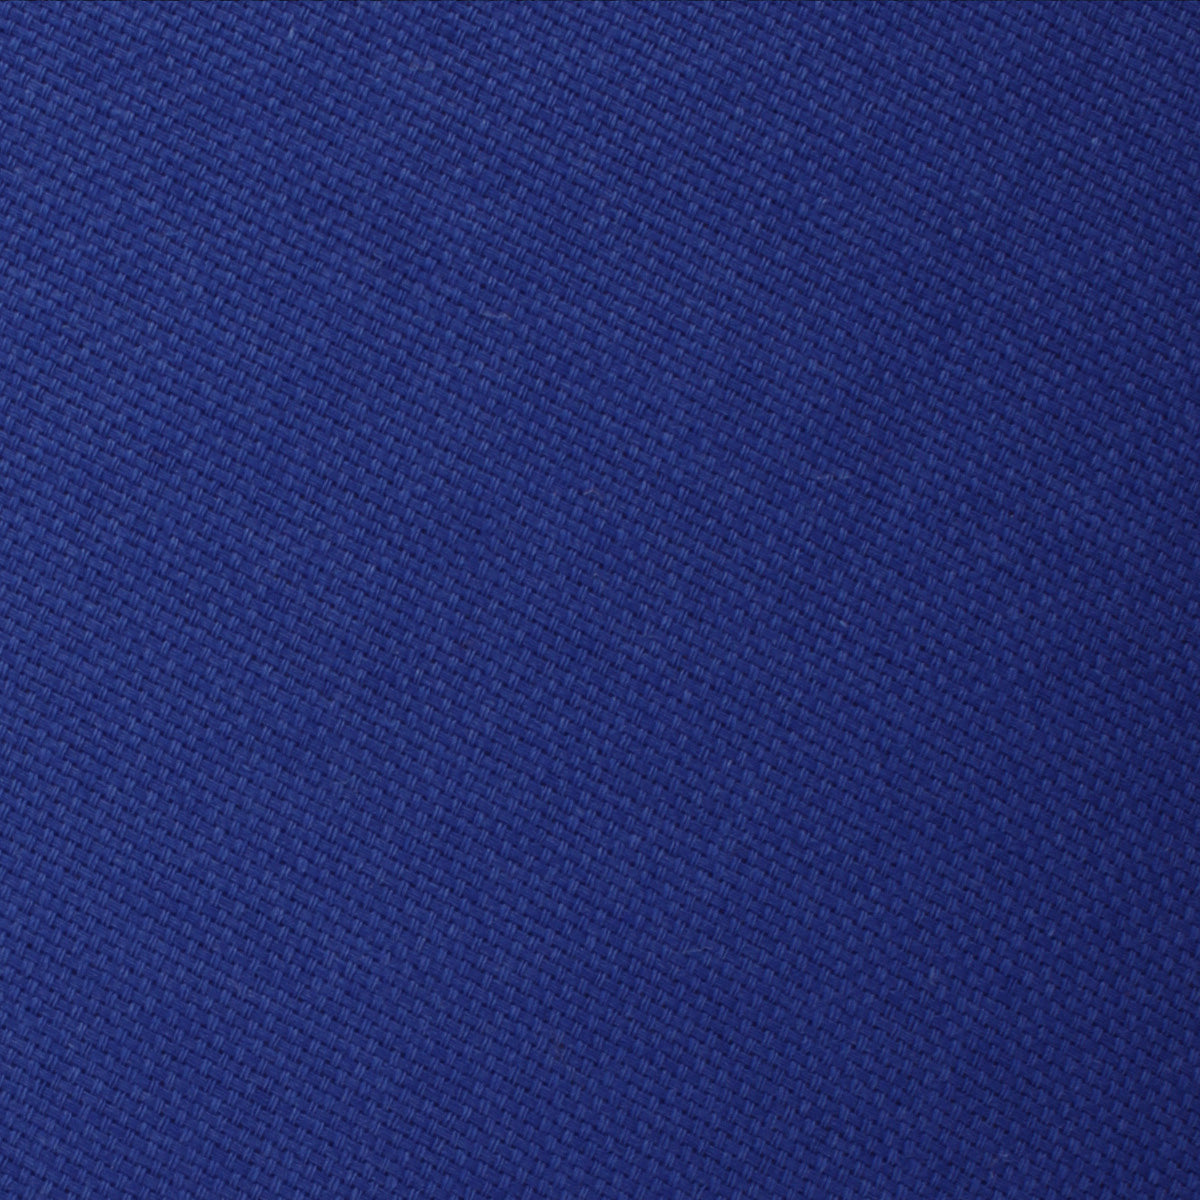 Cobalt Blue Linen Self Bow Tie Fabric